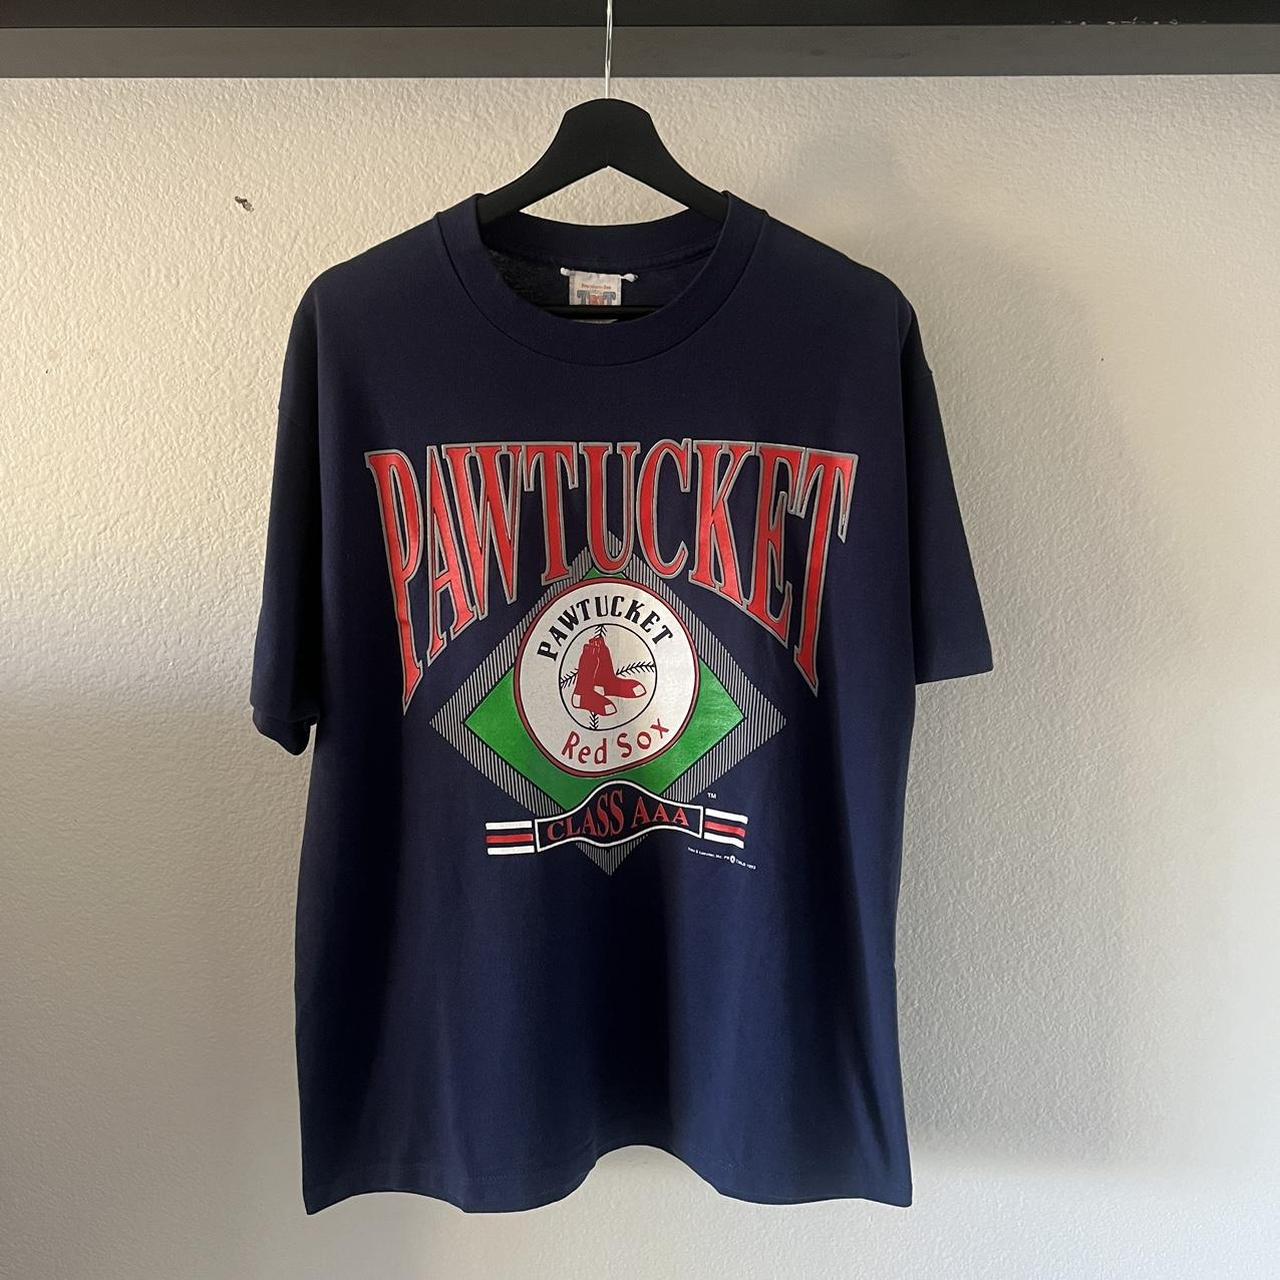 Tops, Pawtucket Red Sox Tshirt